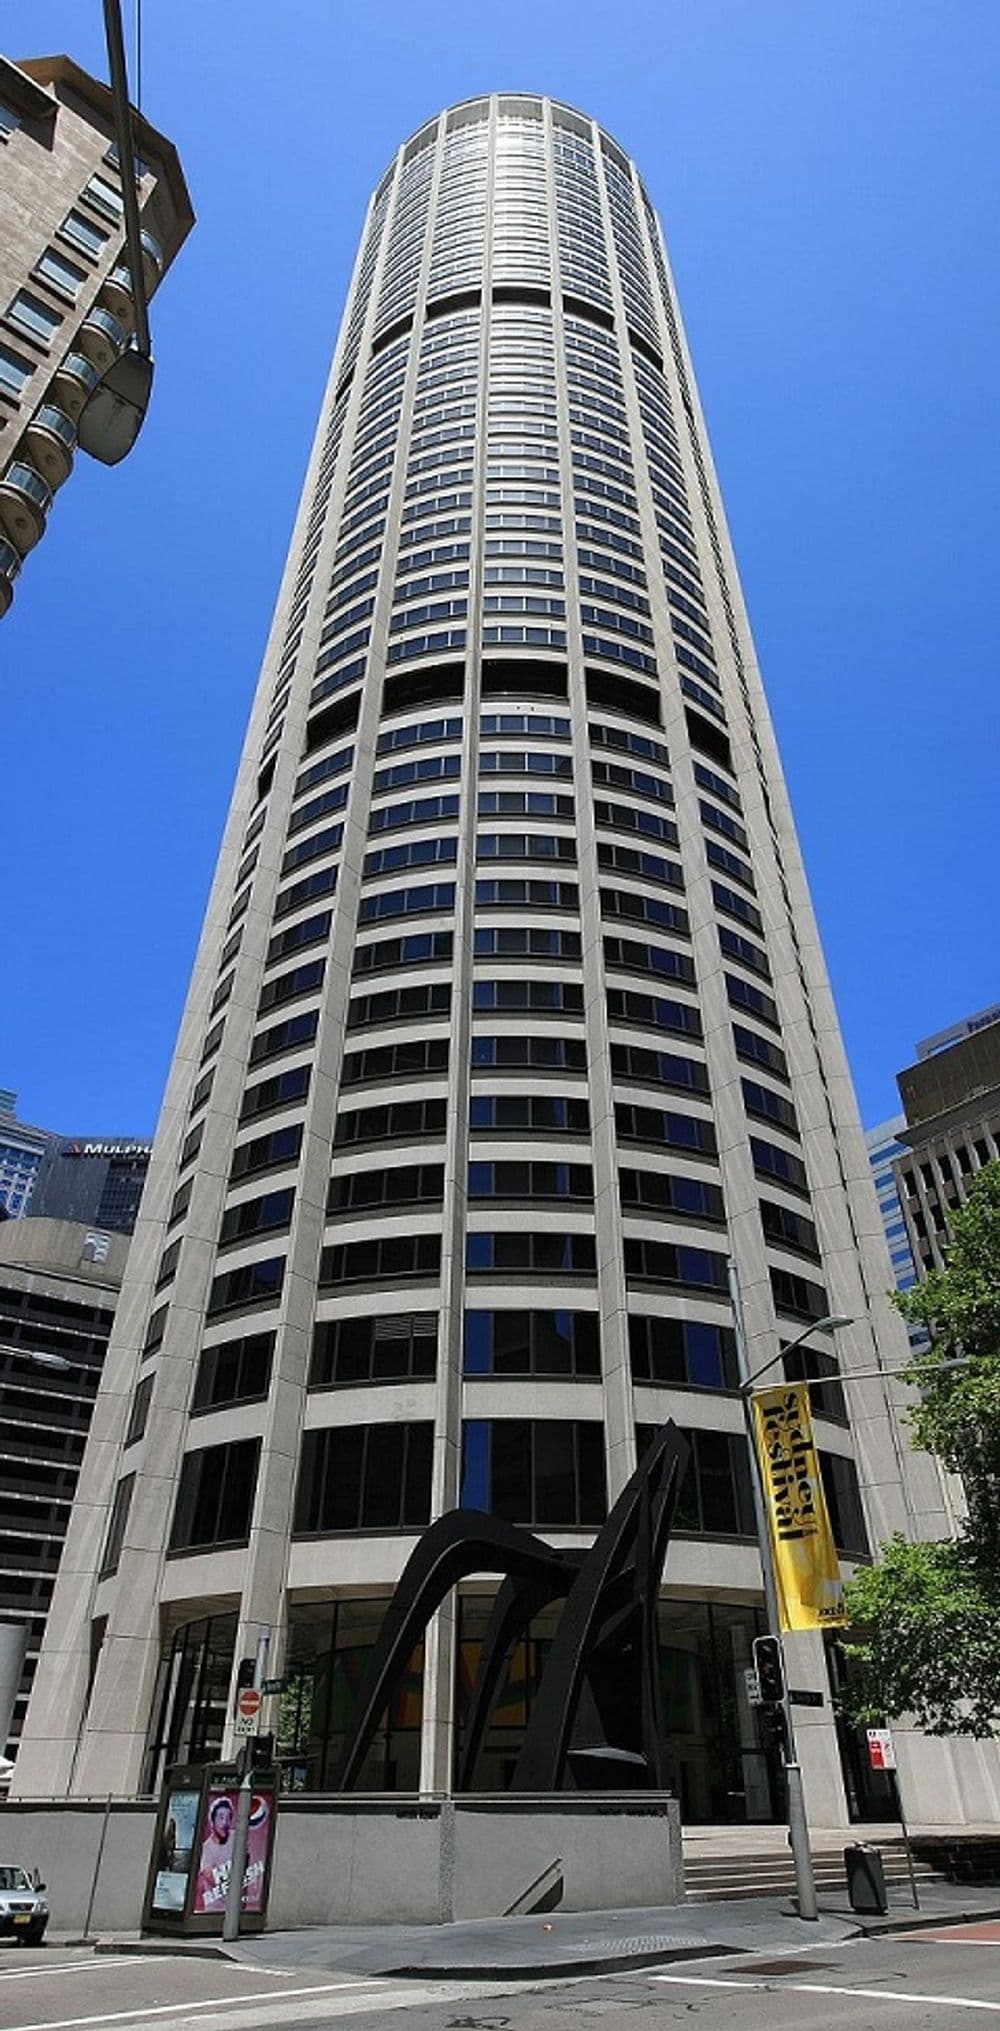 Australia Square Tower